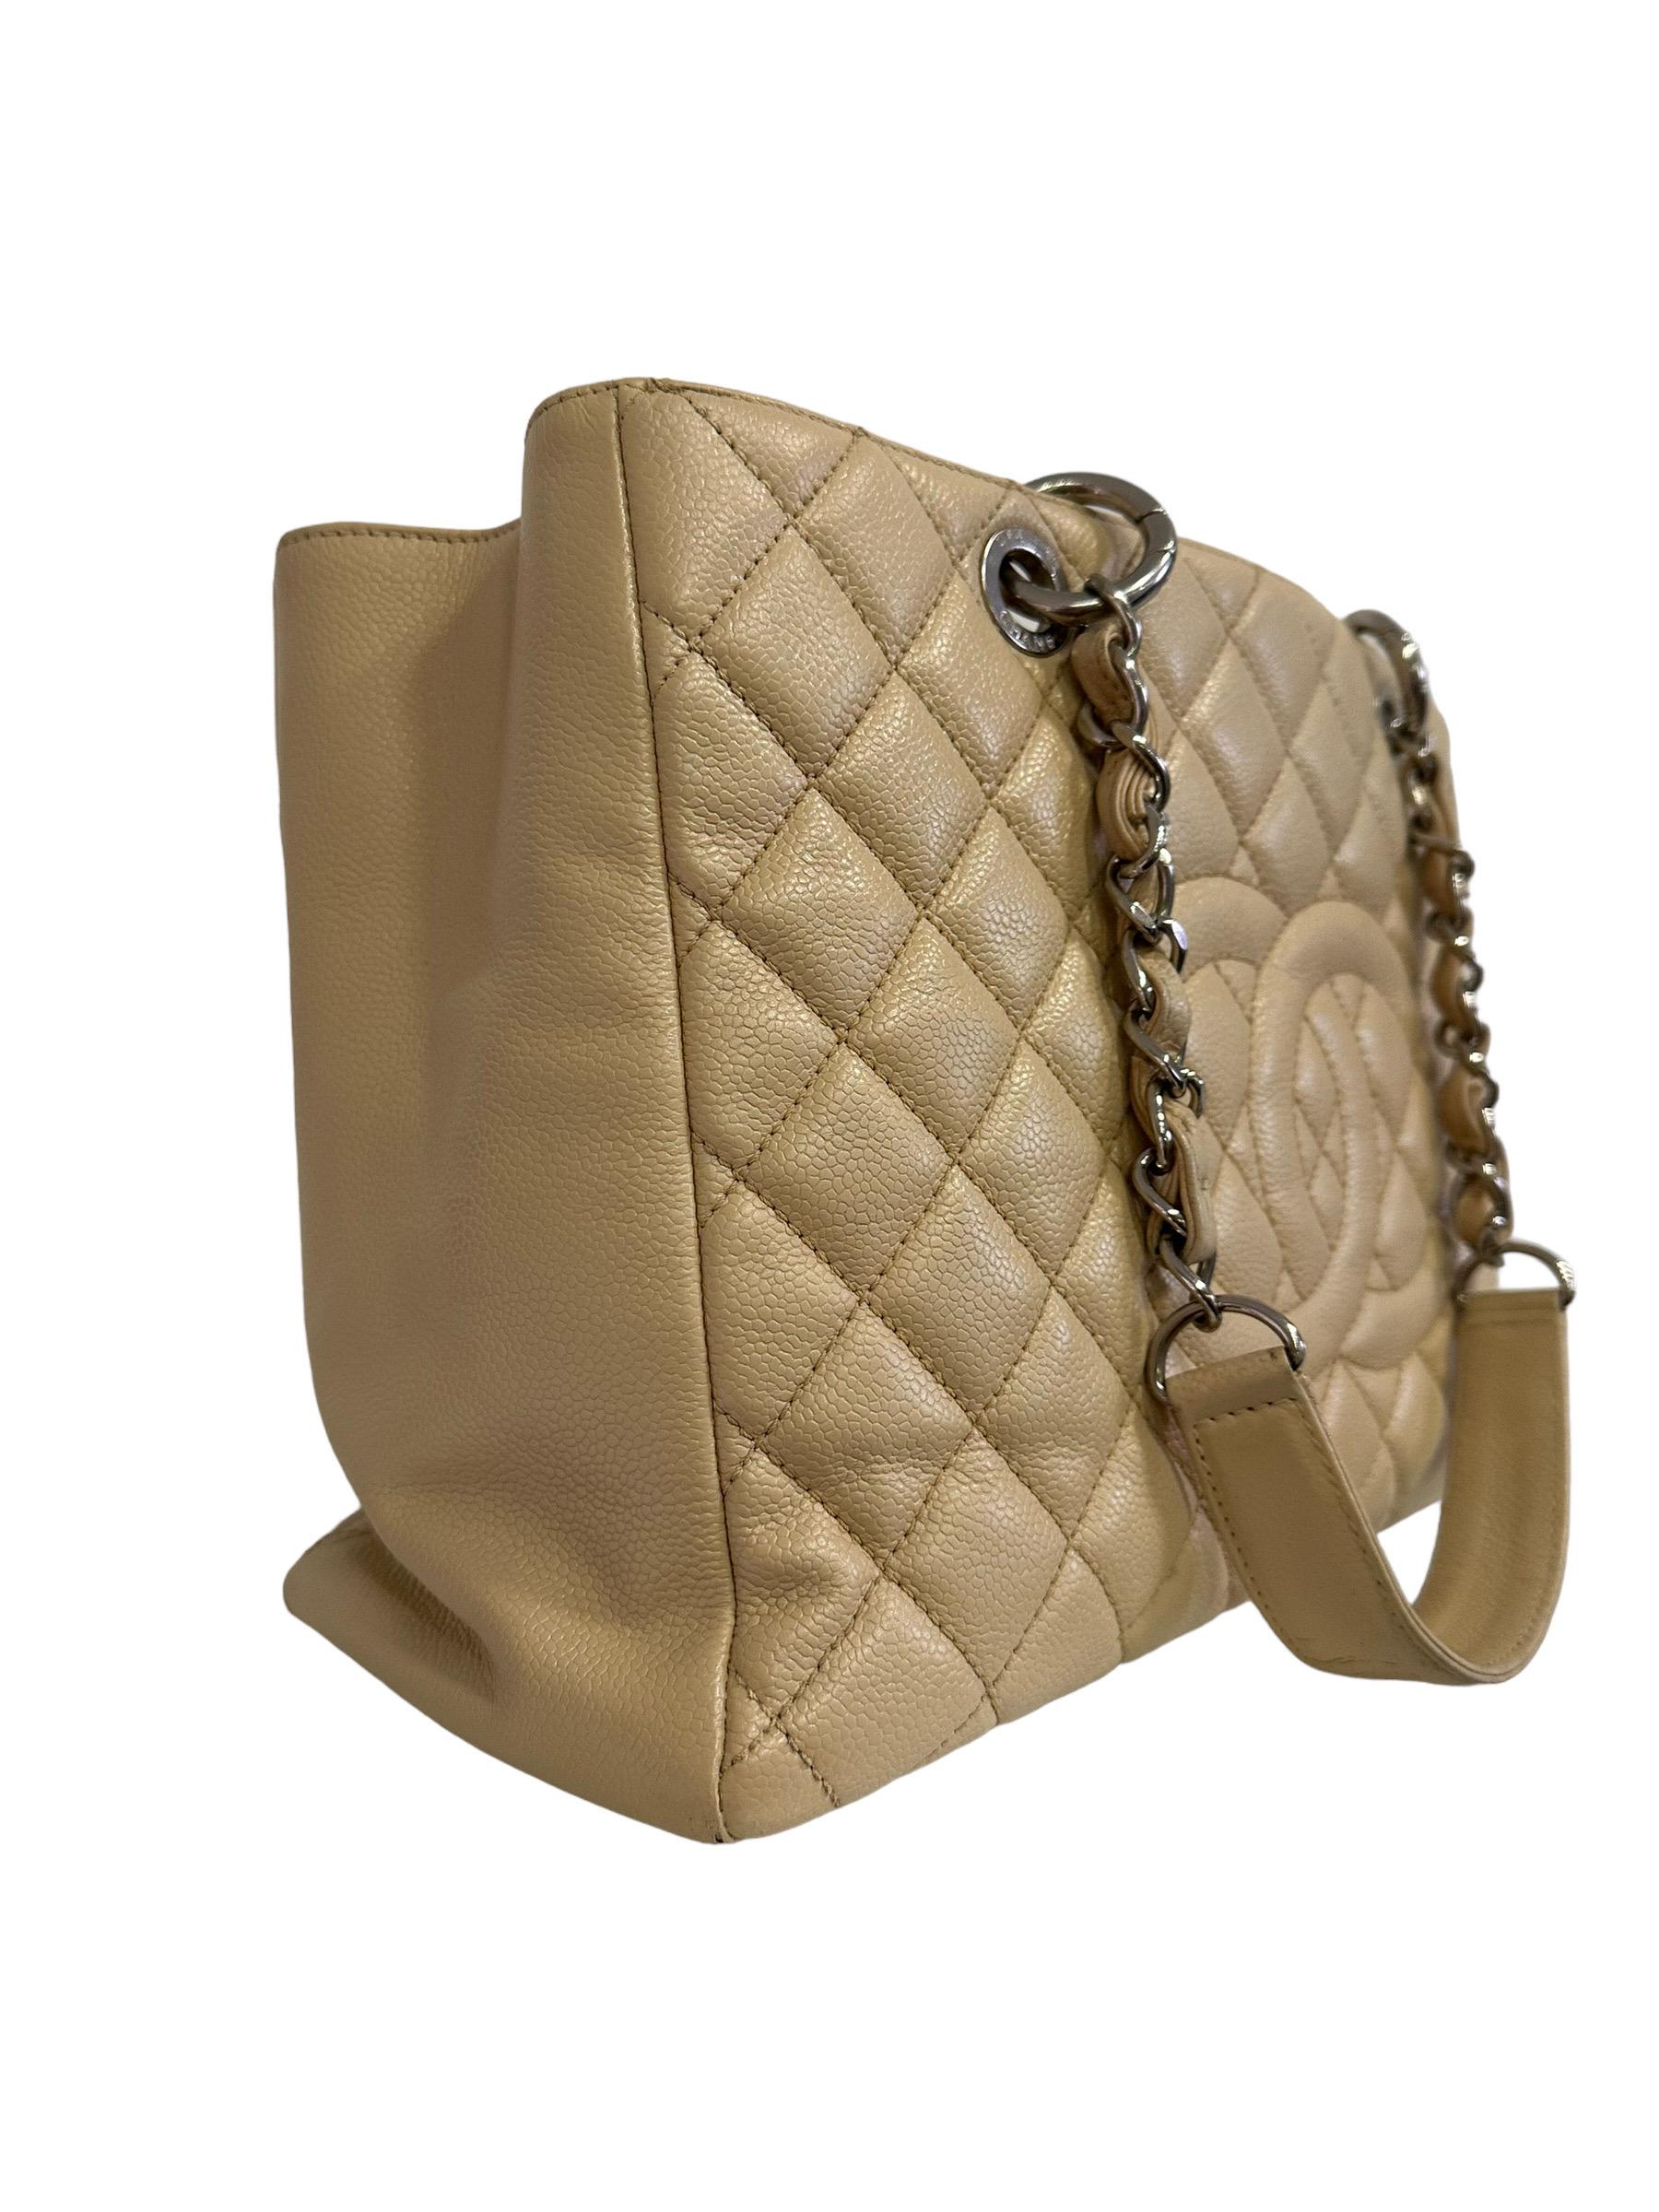 Signierte Tasche von Chanel, Modell GST, aus beigefarbenem, gestepptem Leder mit goldenen Beschlägen. Sie hat eine große zentrale Öffnung und zwei nicht verstellbare, ineinander verschlungene Leder- und Kettengriffe. Innen mit beigem Canvas